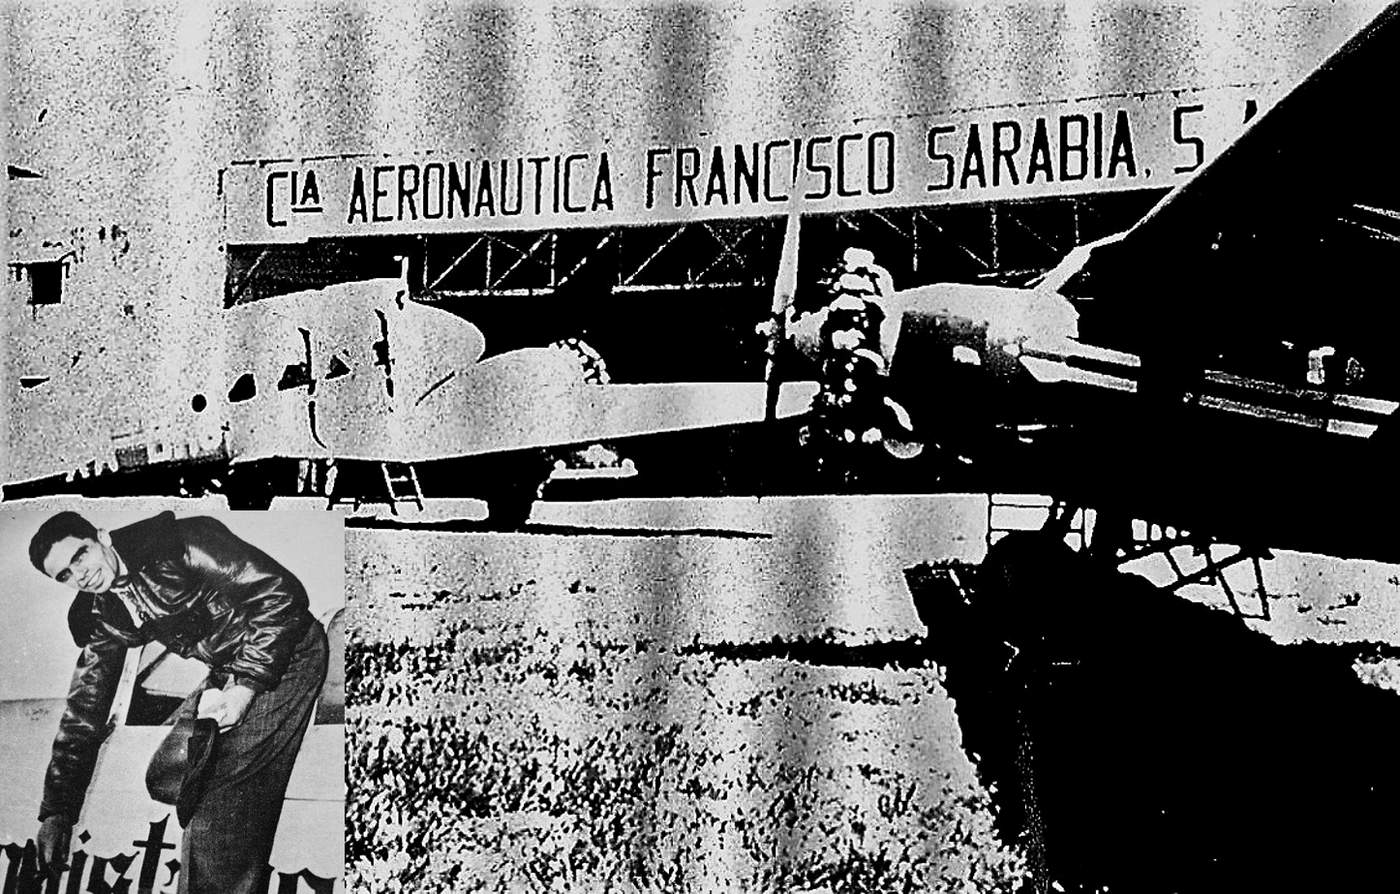 Hangar de la Cía. Araunautica Francisco Sarabia, S. A., donde tenía el taller y guardaba sus aviones.